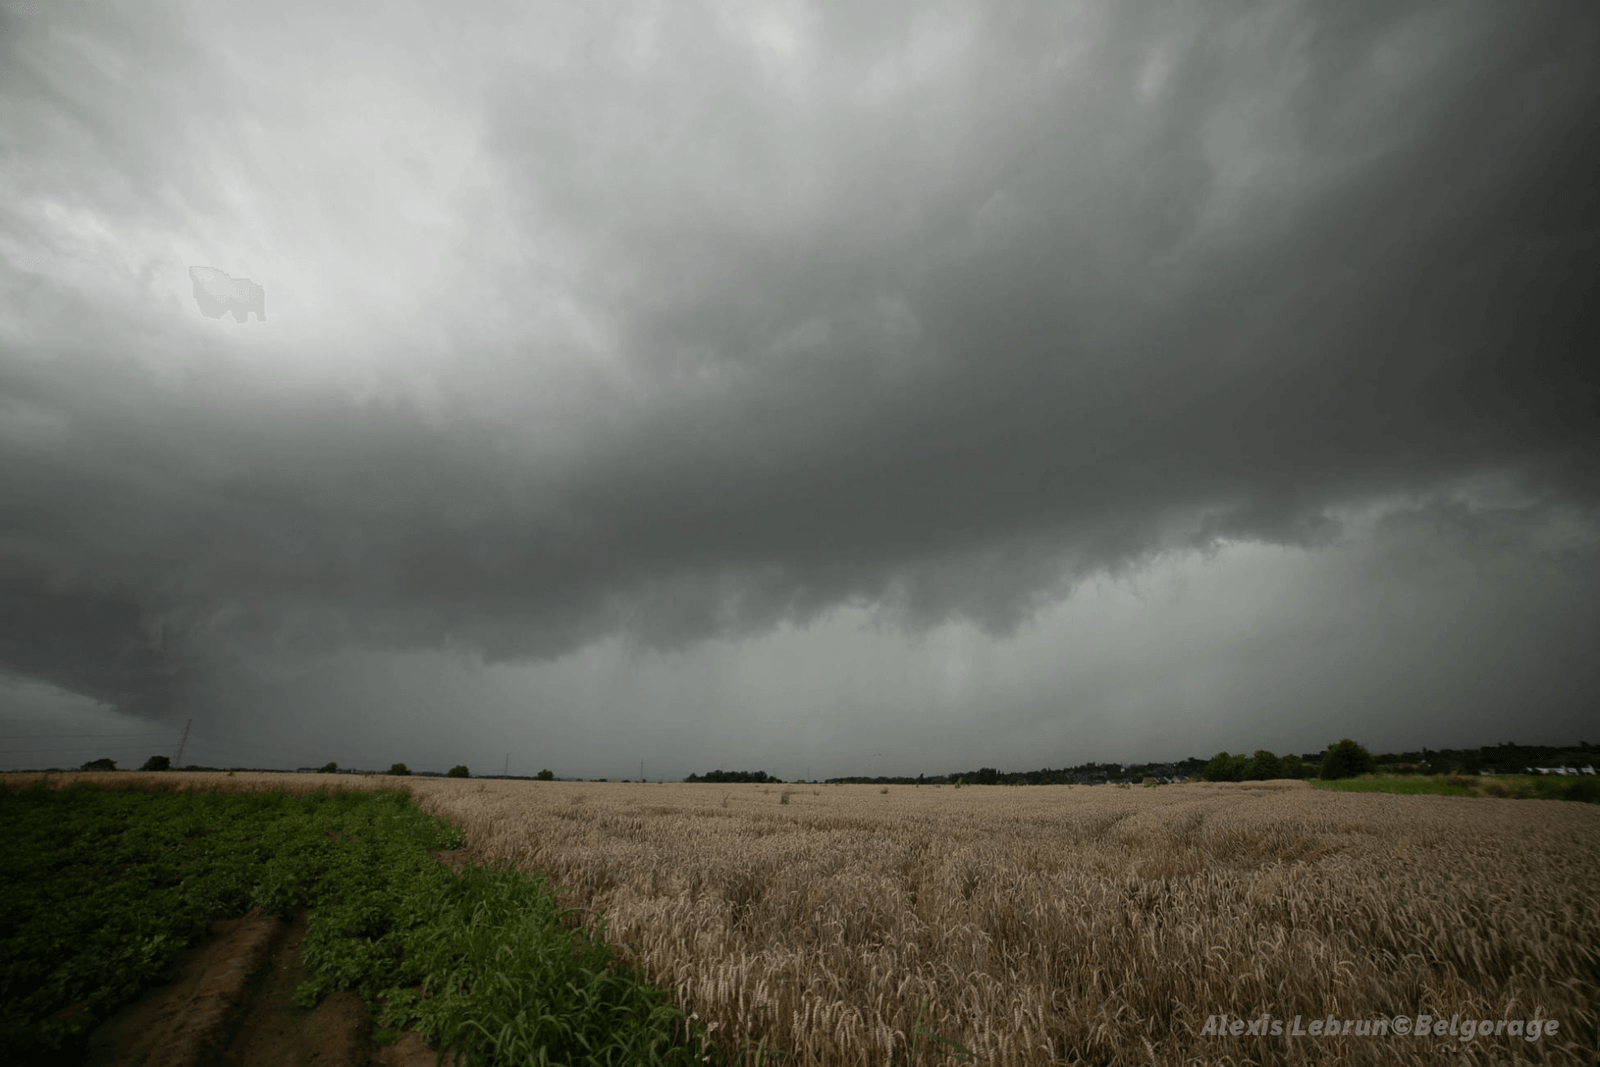 Arcus devançant l'orage multicellulaire à Heppignies, en province de Hainaut, le 7 août 2021 vers 18h00